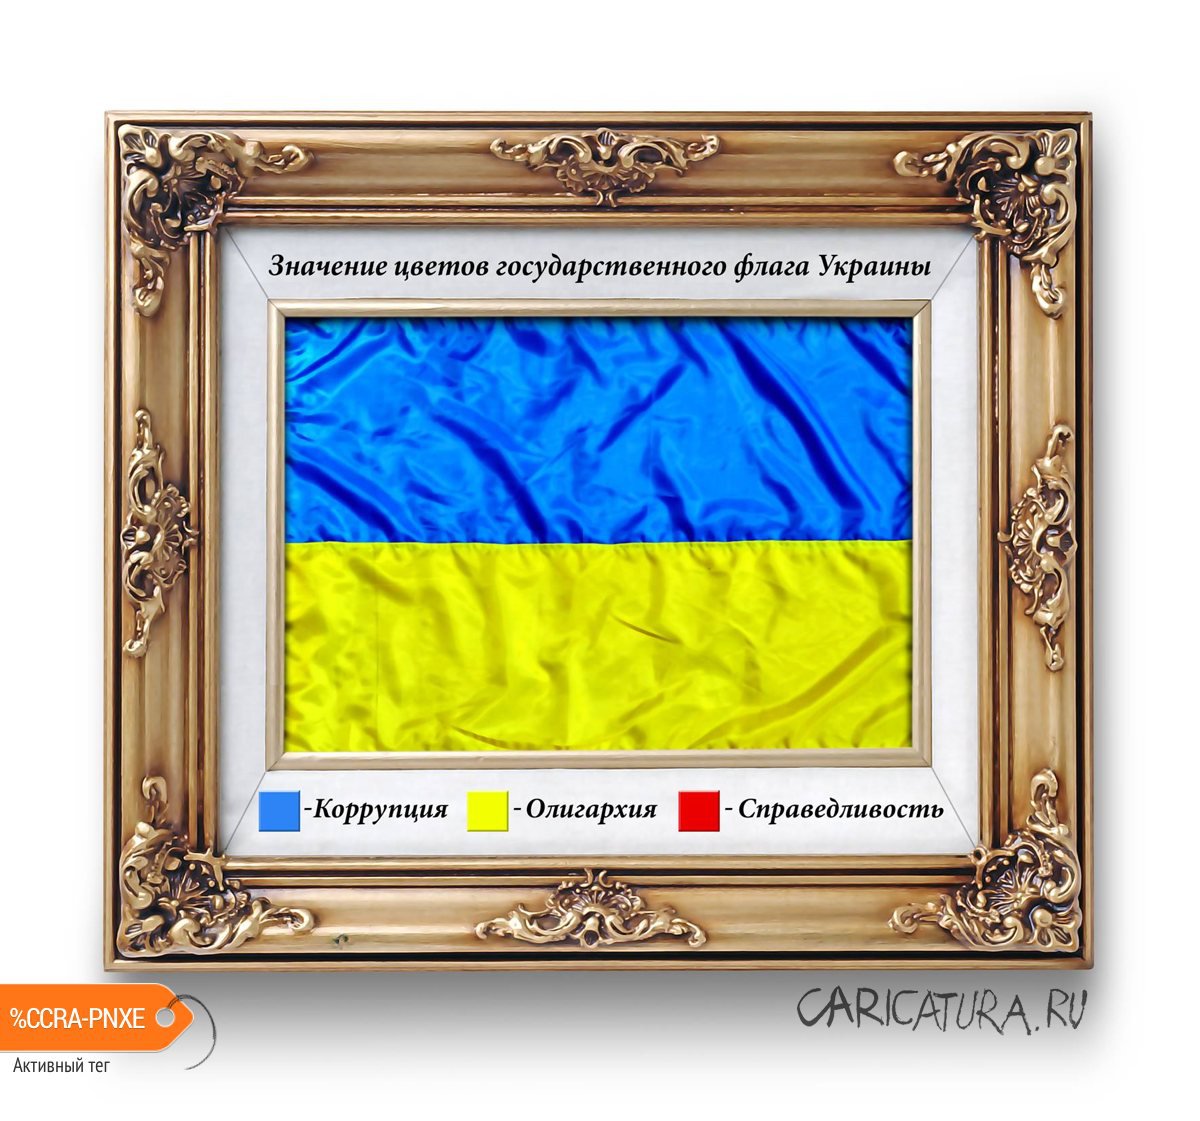 Карикатура "Значение цветов украинского флага", Игорь Конденко